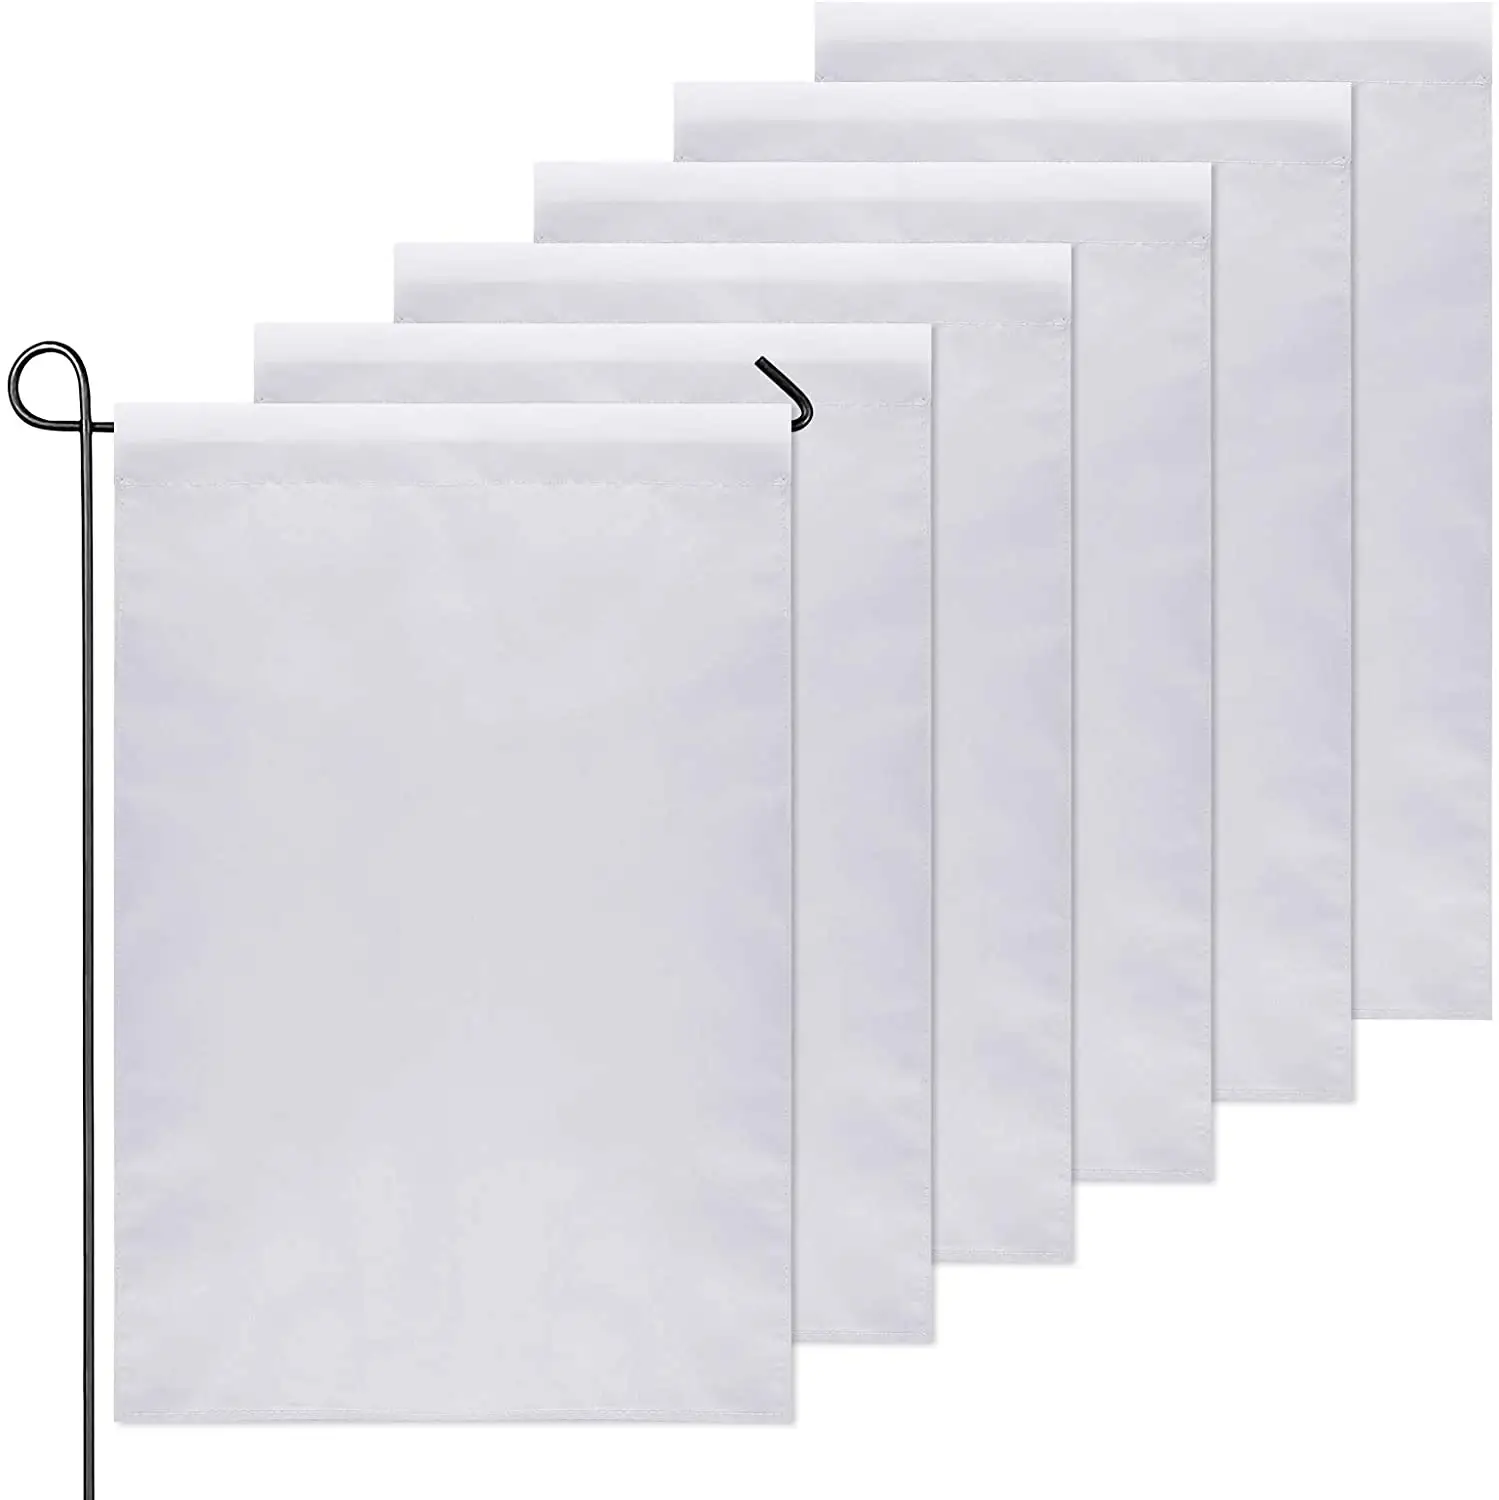 BOLISI 12x18 30x45 bandiere da giardino personalizzate in bianco a sublimazione su entrambi i lati in poliestere